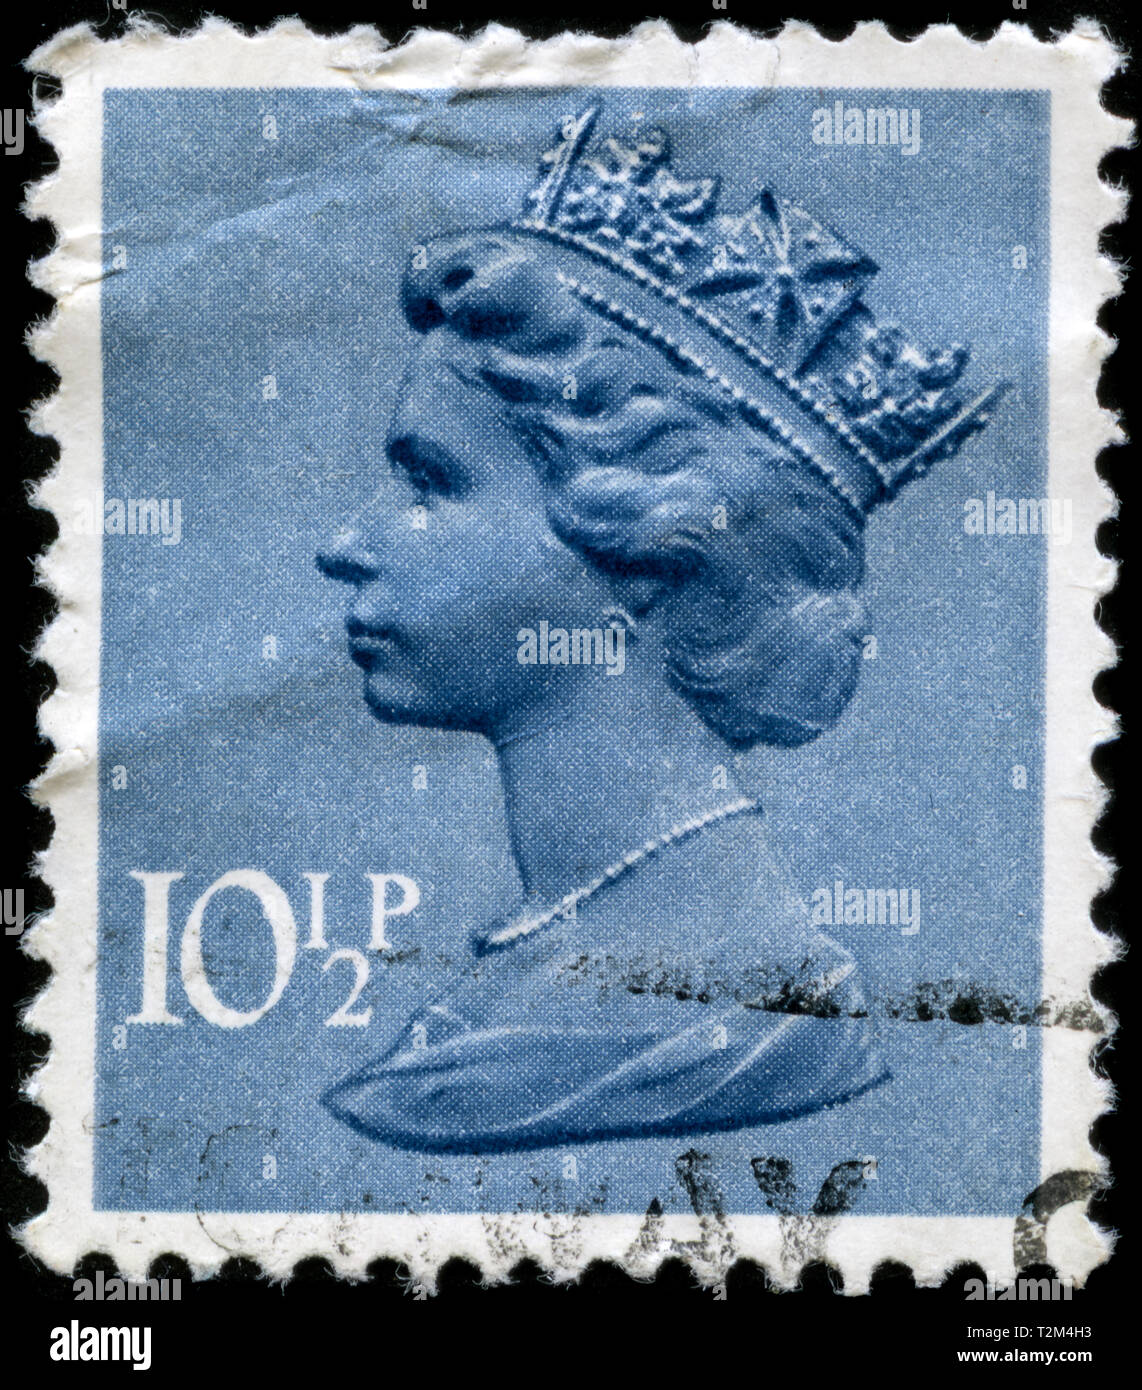 Timbre-poste du Royaume-Uni et l'Irlande du Nord dans le Queen Elizabeth II - virgule Machin - Normal Perfs série émise en 1978 Banque D'Images